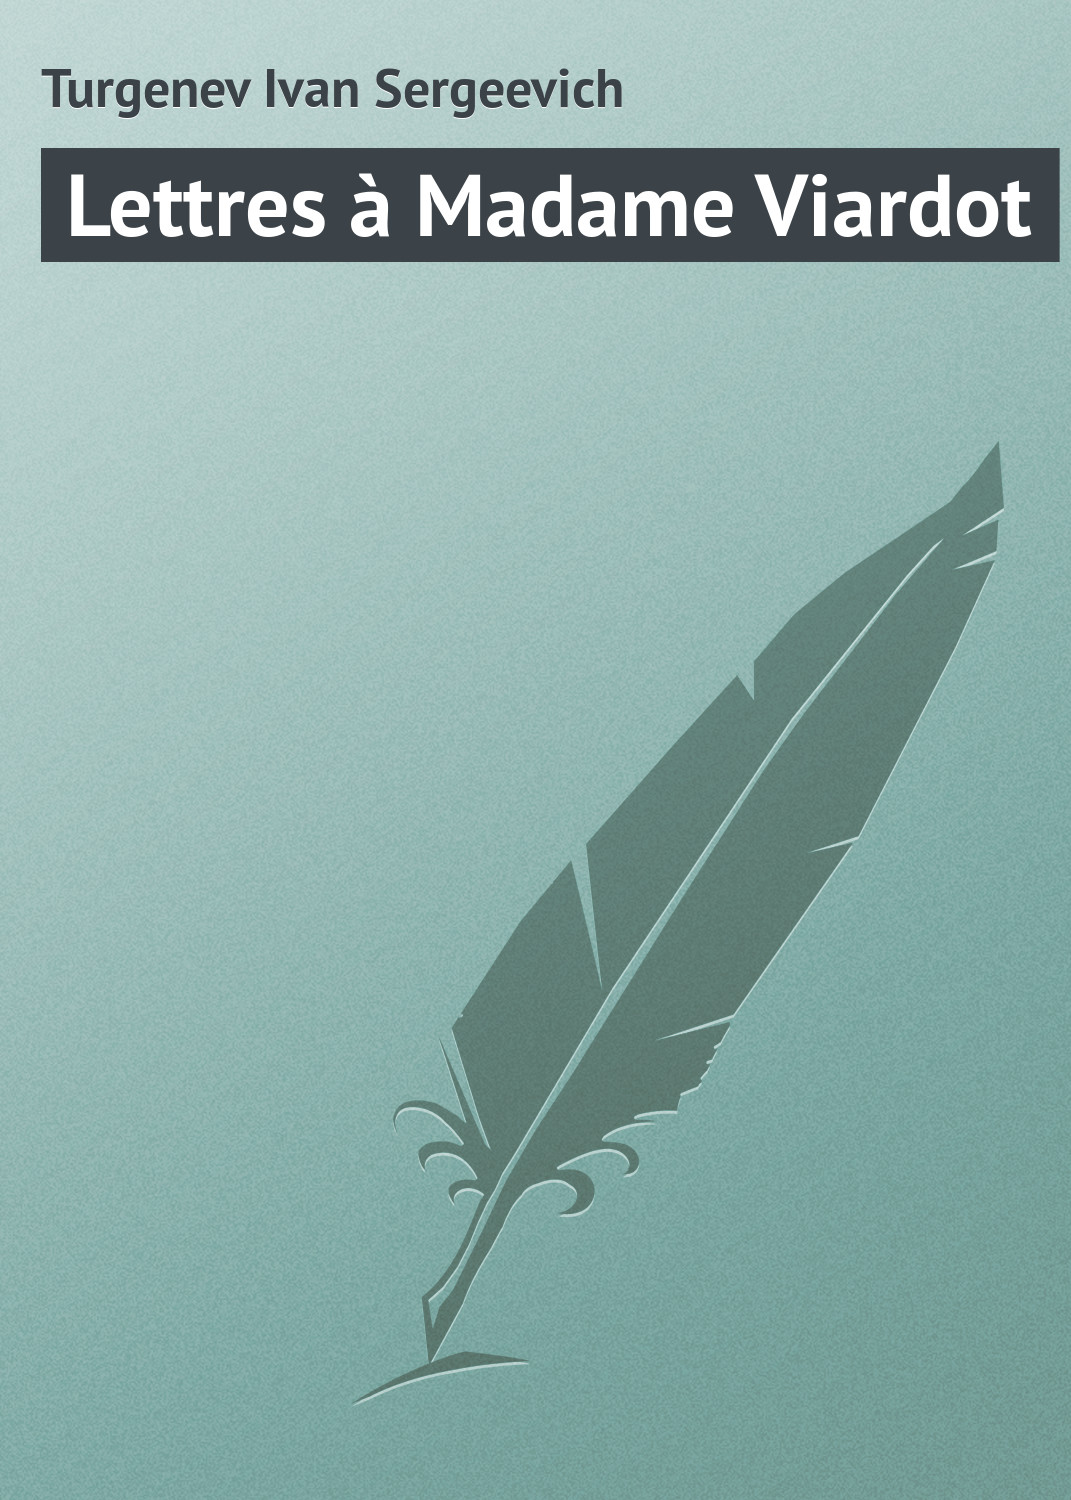 Книга Lettres à Madame Viardot из серии , созданная Turgenev Ivan, может относится к жанру Зарубежная классика. Стоимость электронной книги Lettres à Madame Viardot с идентификатором 23166707 составляет 5.99 руб.